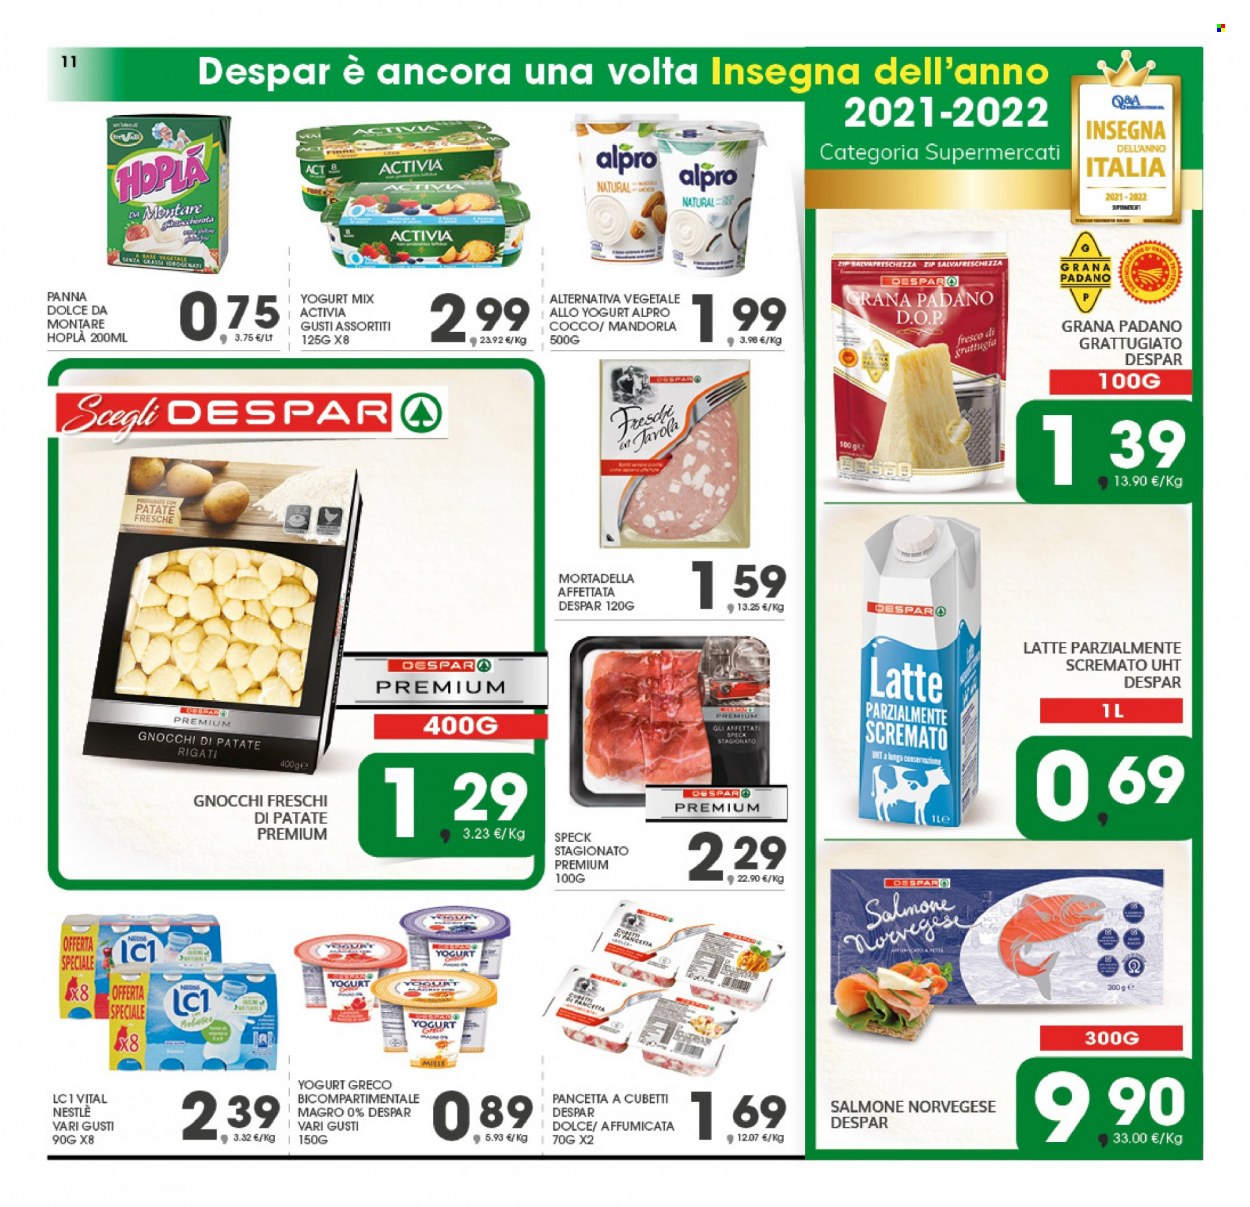 thumbnail - Volantino Eurospar - 23/5/2022 - 1/6/2022 - Prodotti in offerta - salmone, speck, pancetta, mortadella, formaggio, Grana Padano, Activia, latte, LC1, panna, gnocchi, Nestlé. Pagina 11.